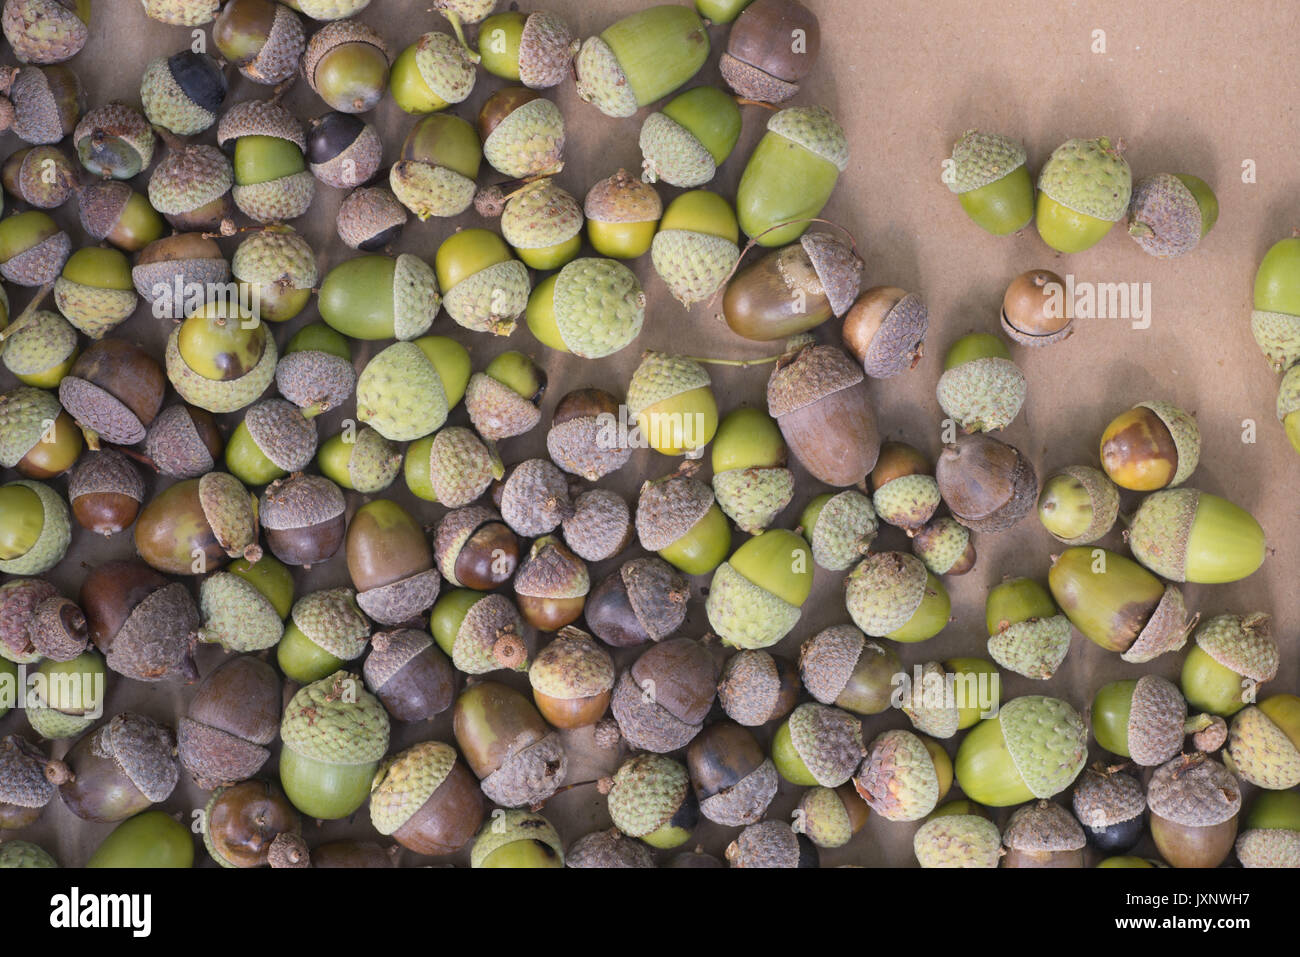 fallen acorns on brown paper texture Stock Photo